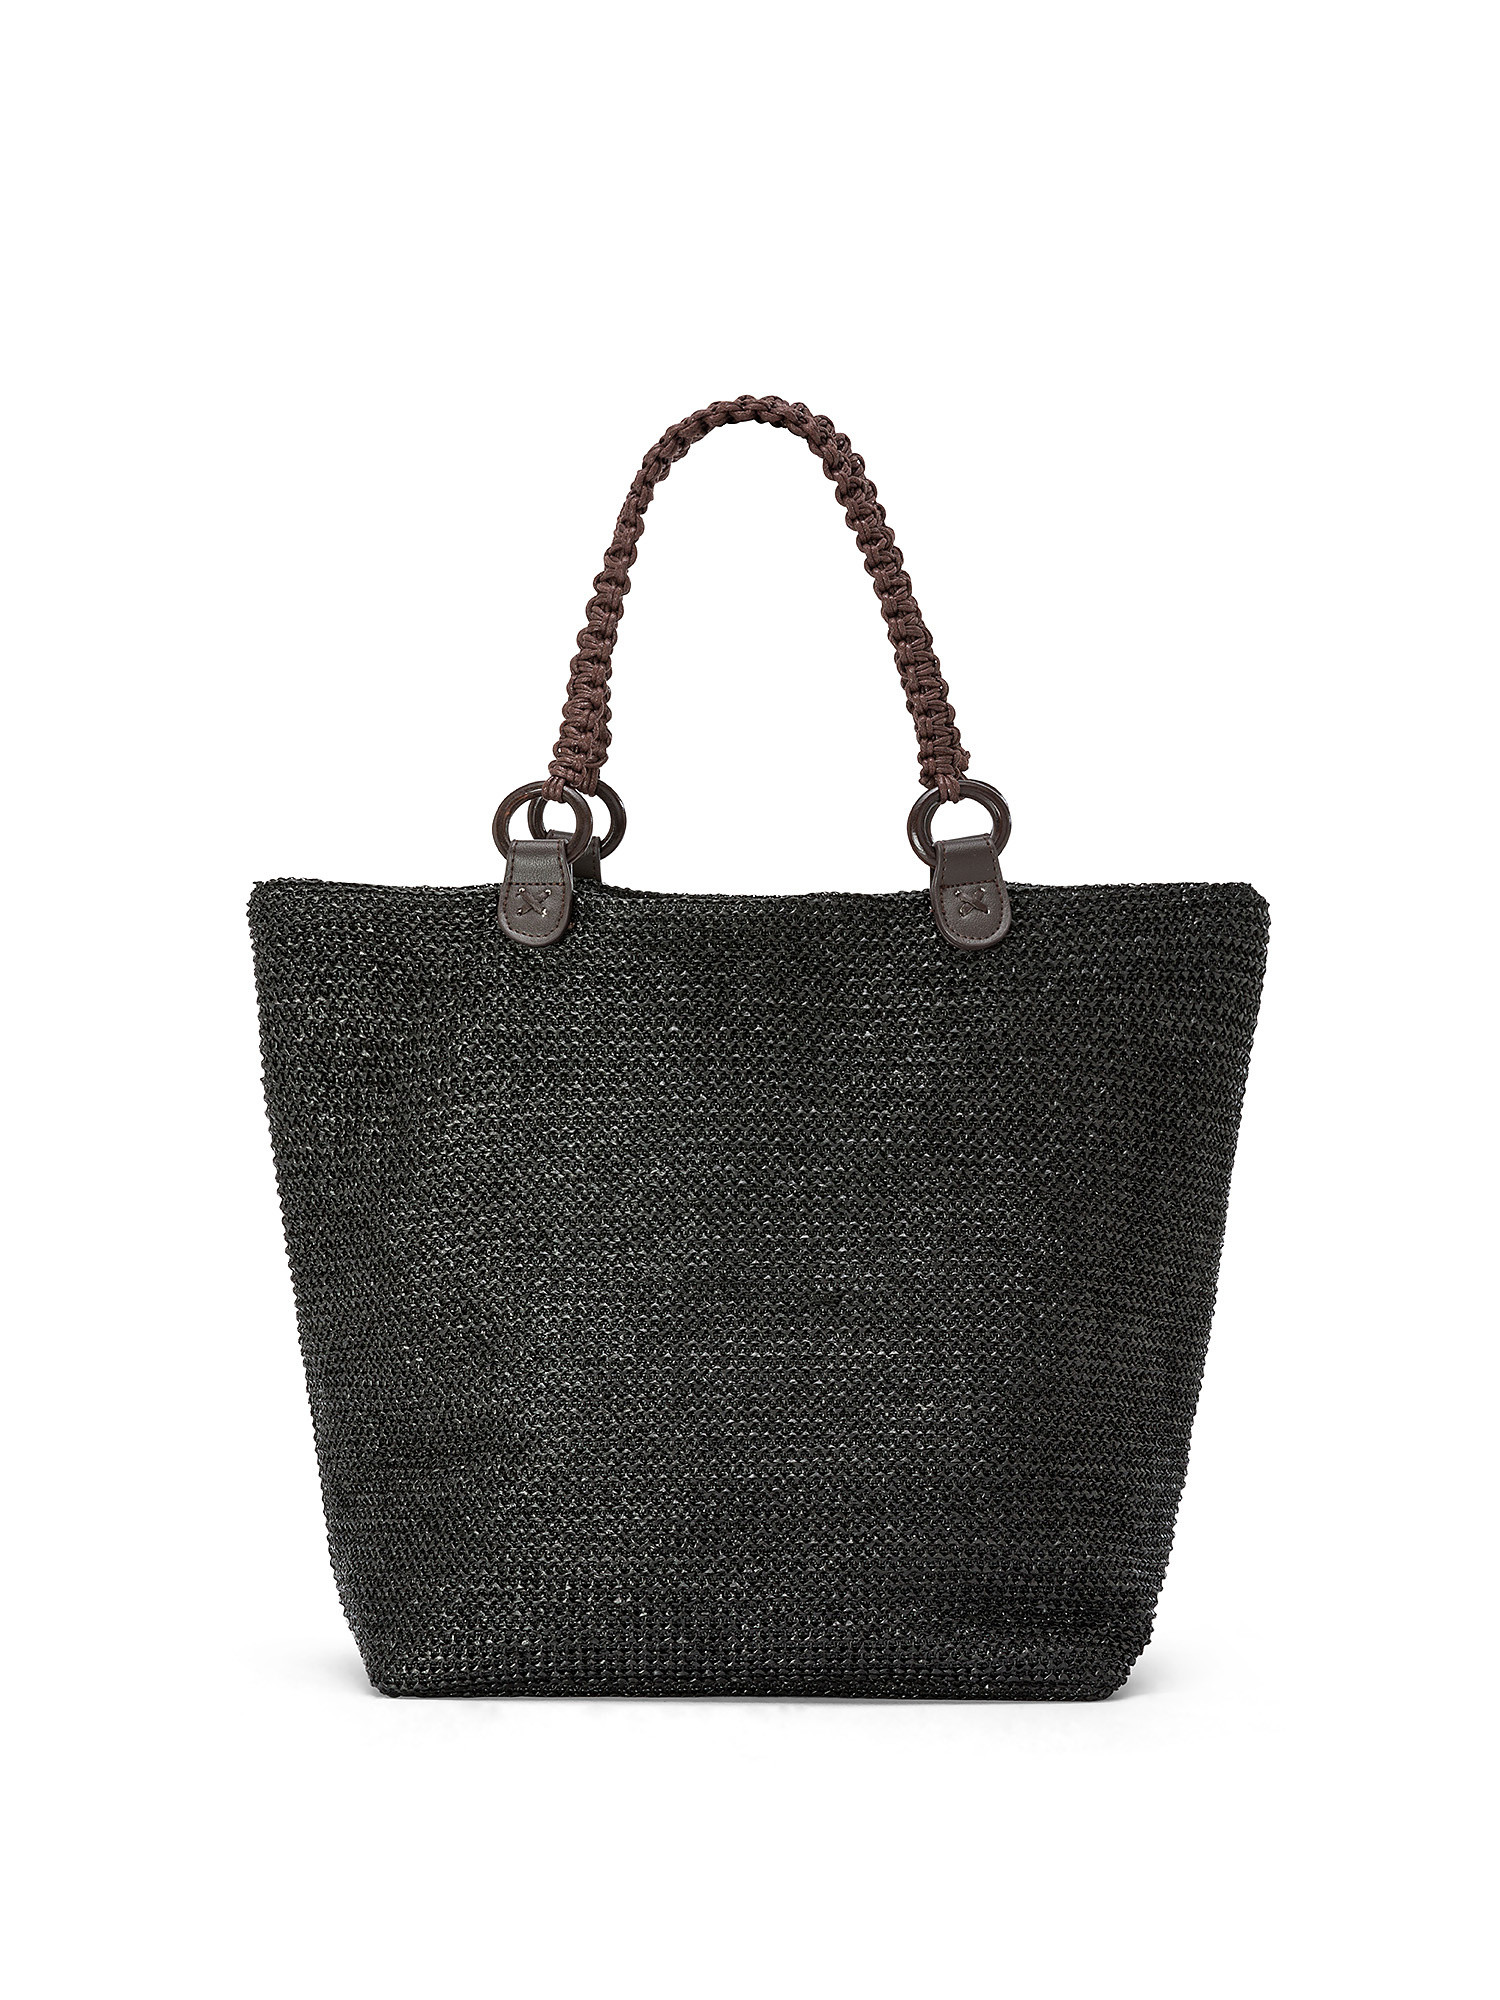 Koan - Shopping bag, Nero, large image number 0